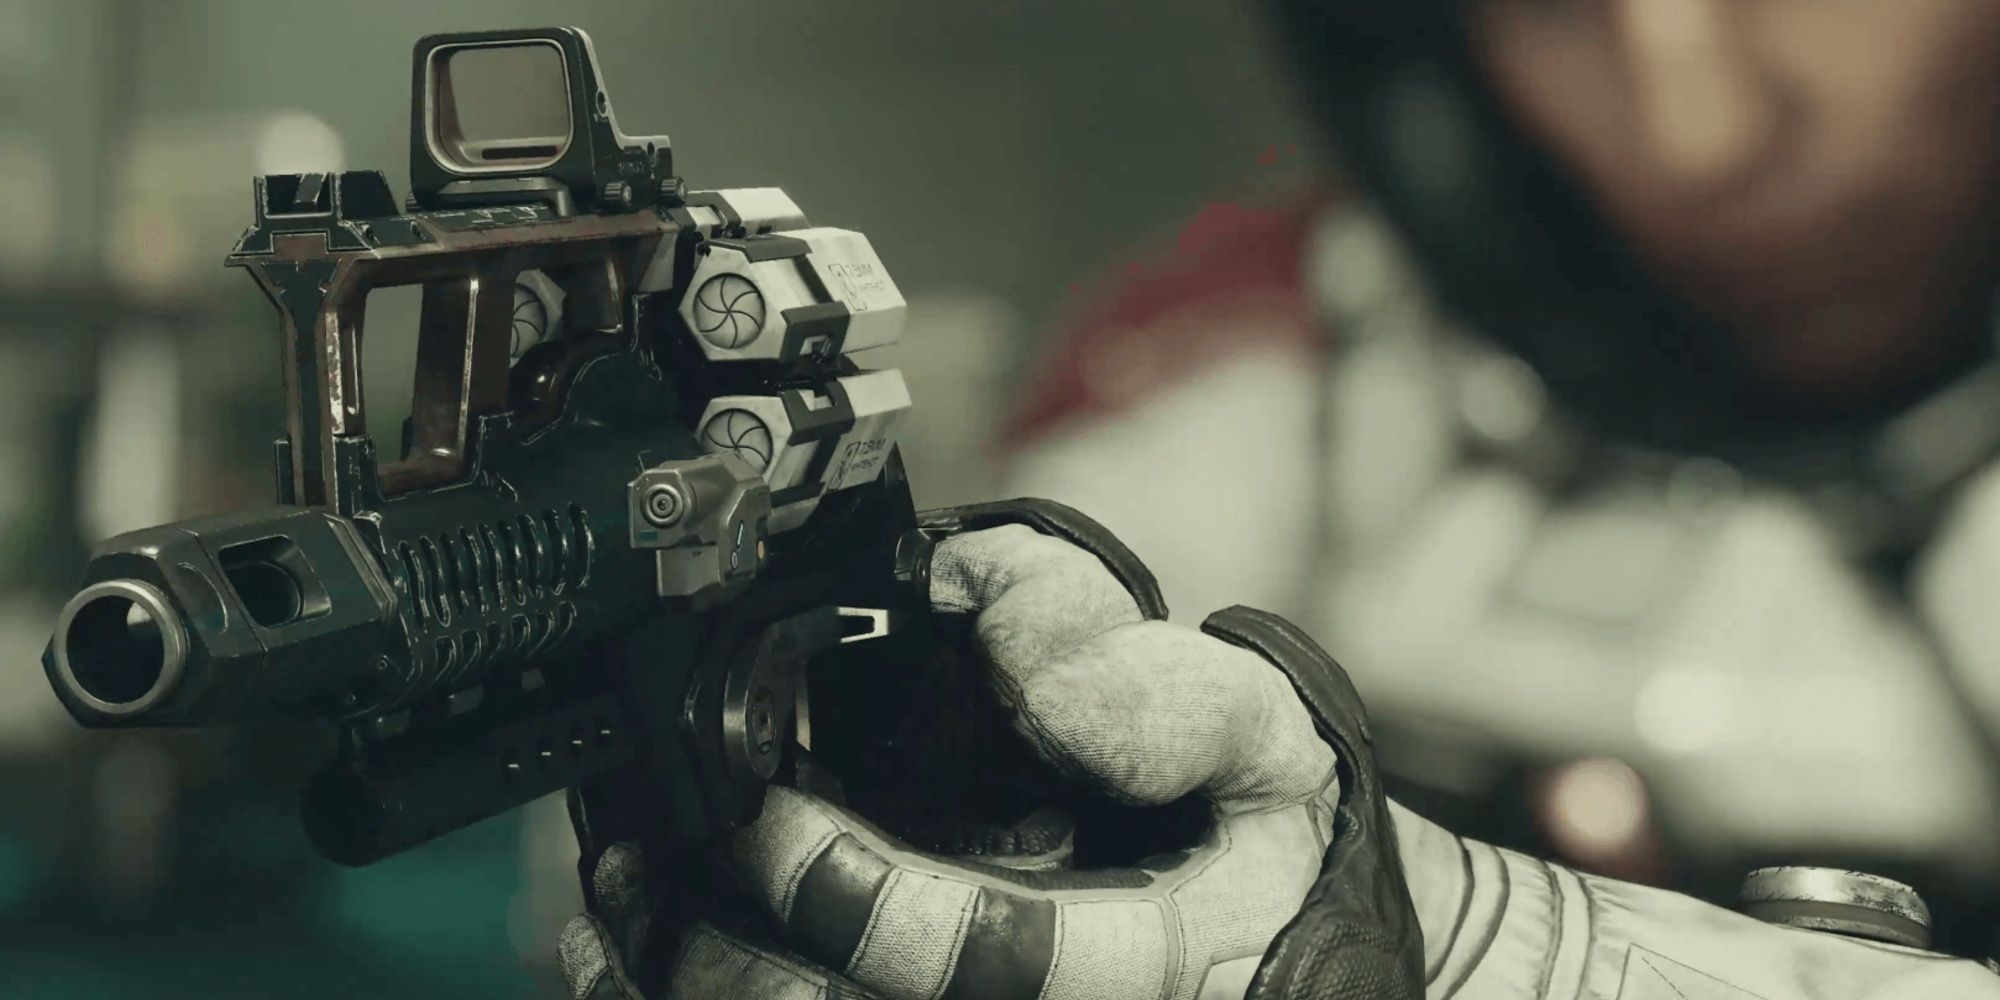 Старфилд, скриншот персонажа, целящегося из пистолета